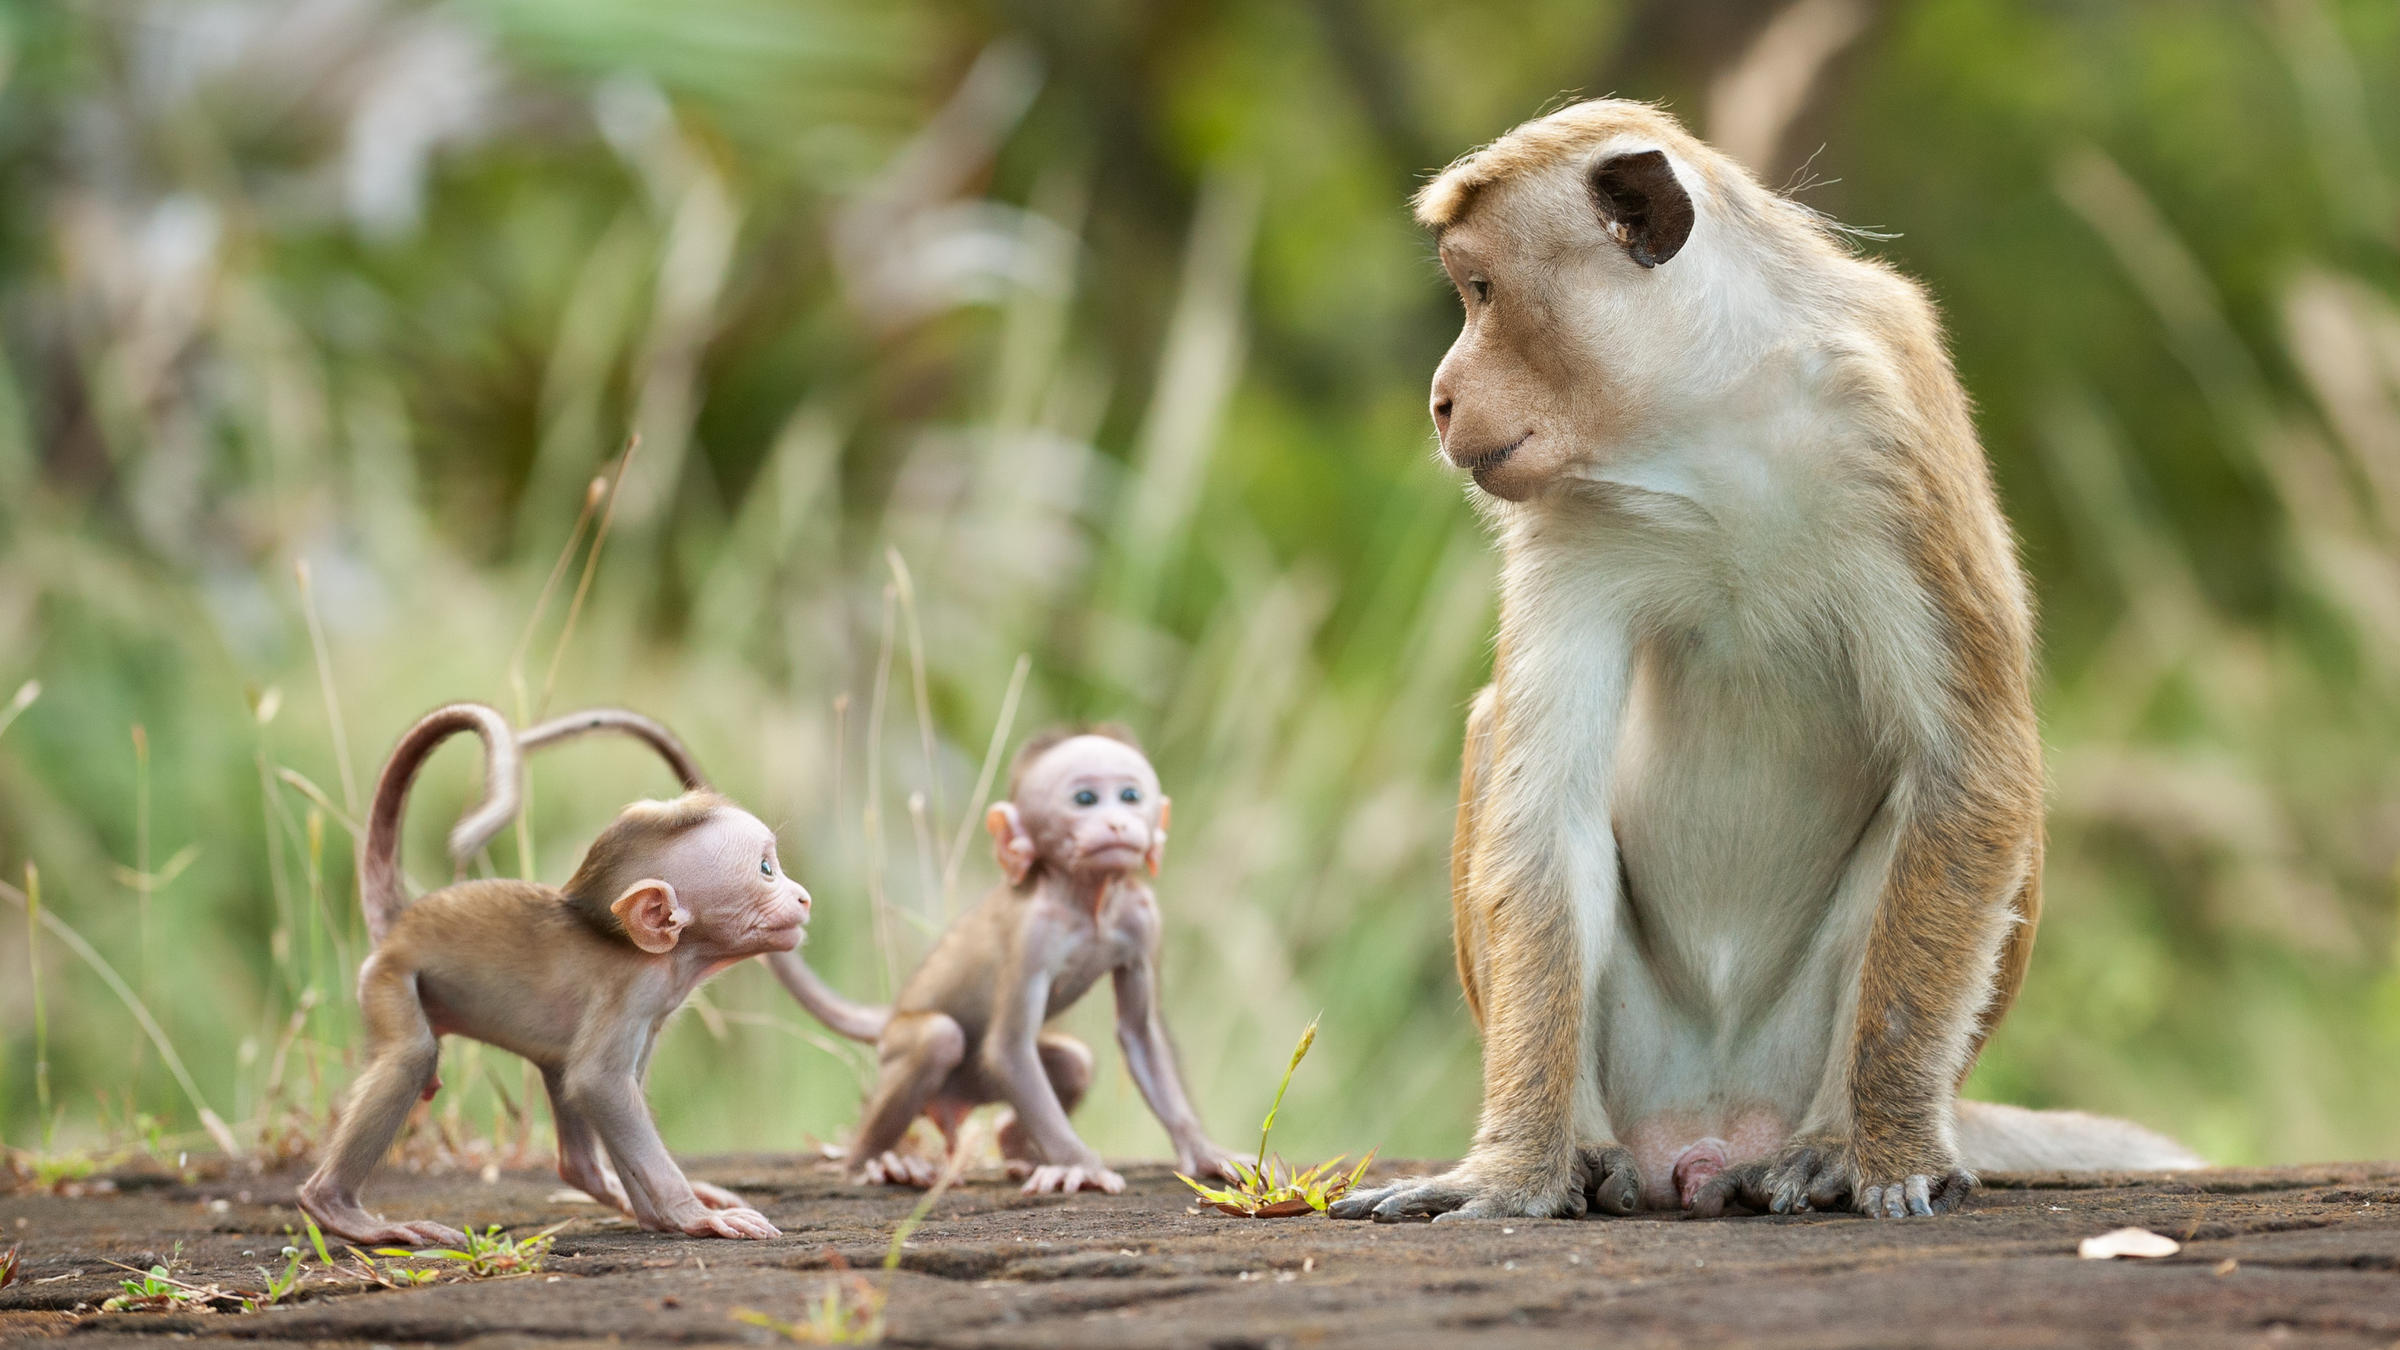 Hình ảnh con khỉ đẹp nhất đã được chúng tôi chọn lọc cẩn thận từ hàng ngàn bức ảnh khác nhau trên toàn thế giới. Hãy cùng tham gia vào hành trình khám phá vẻ đẹp hoang dã của loài vật này thông qua ống kính tinh tế của những nhiếp ảnh gia tài ba.